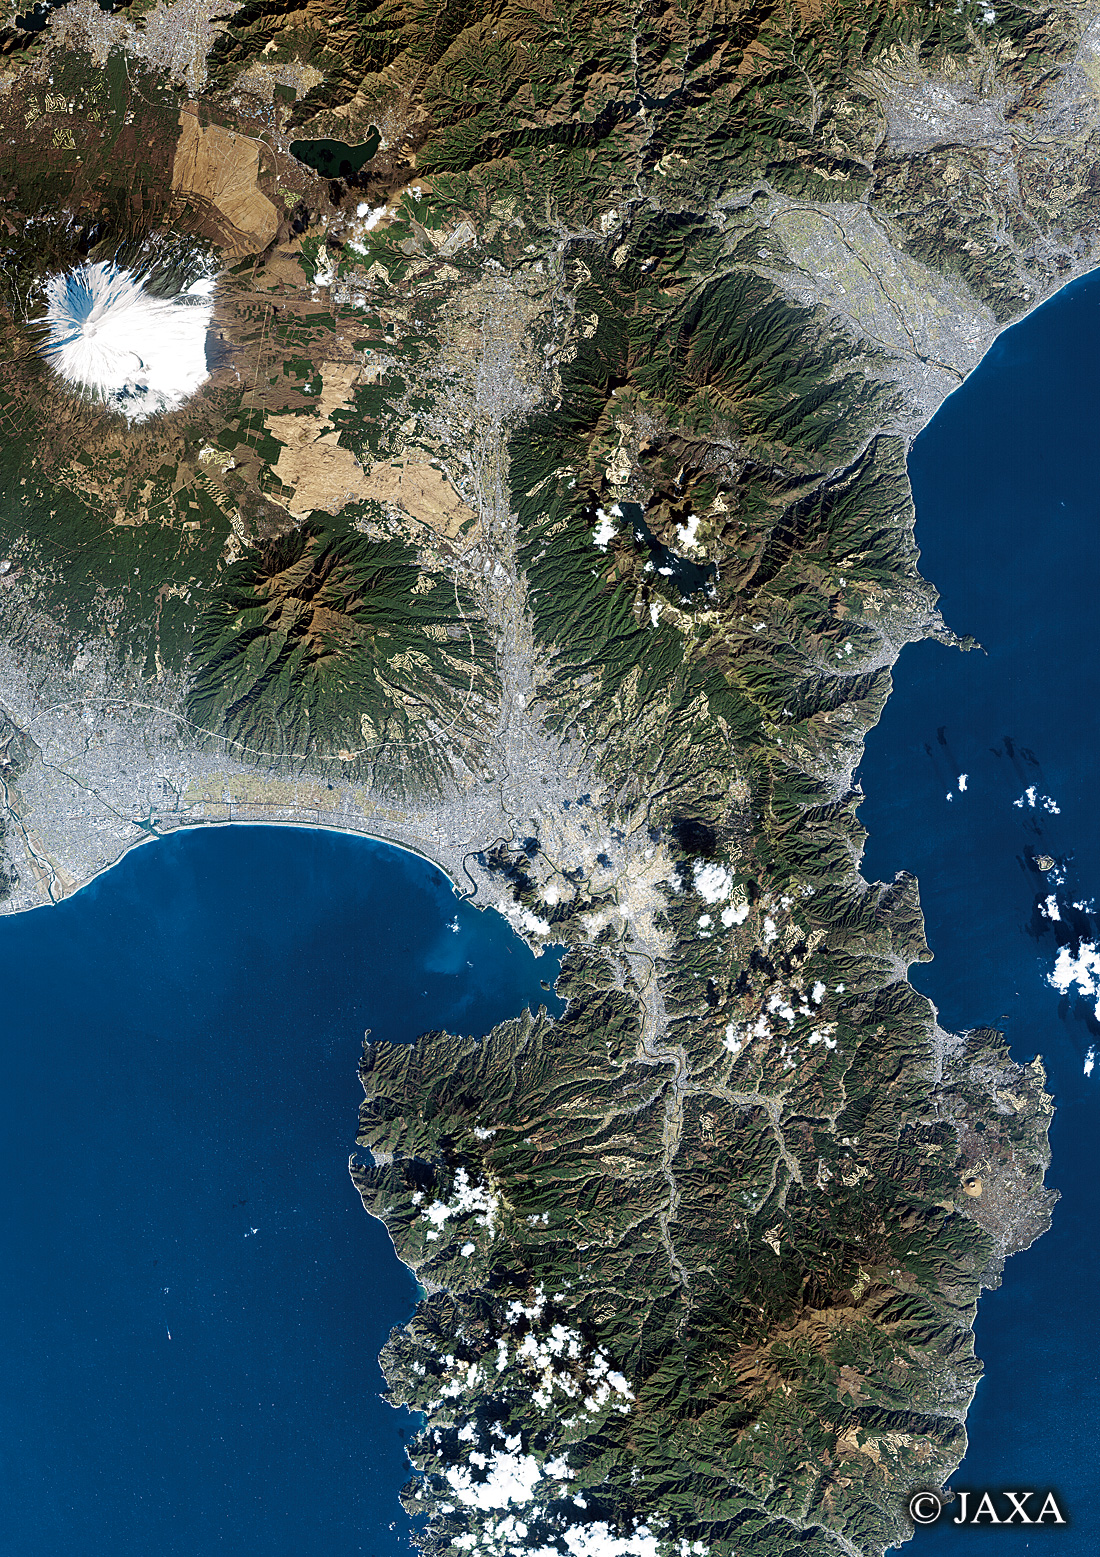 だいちから見た日本の都市 伊豆半島:衛星画像